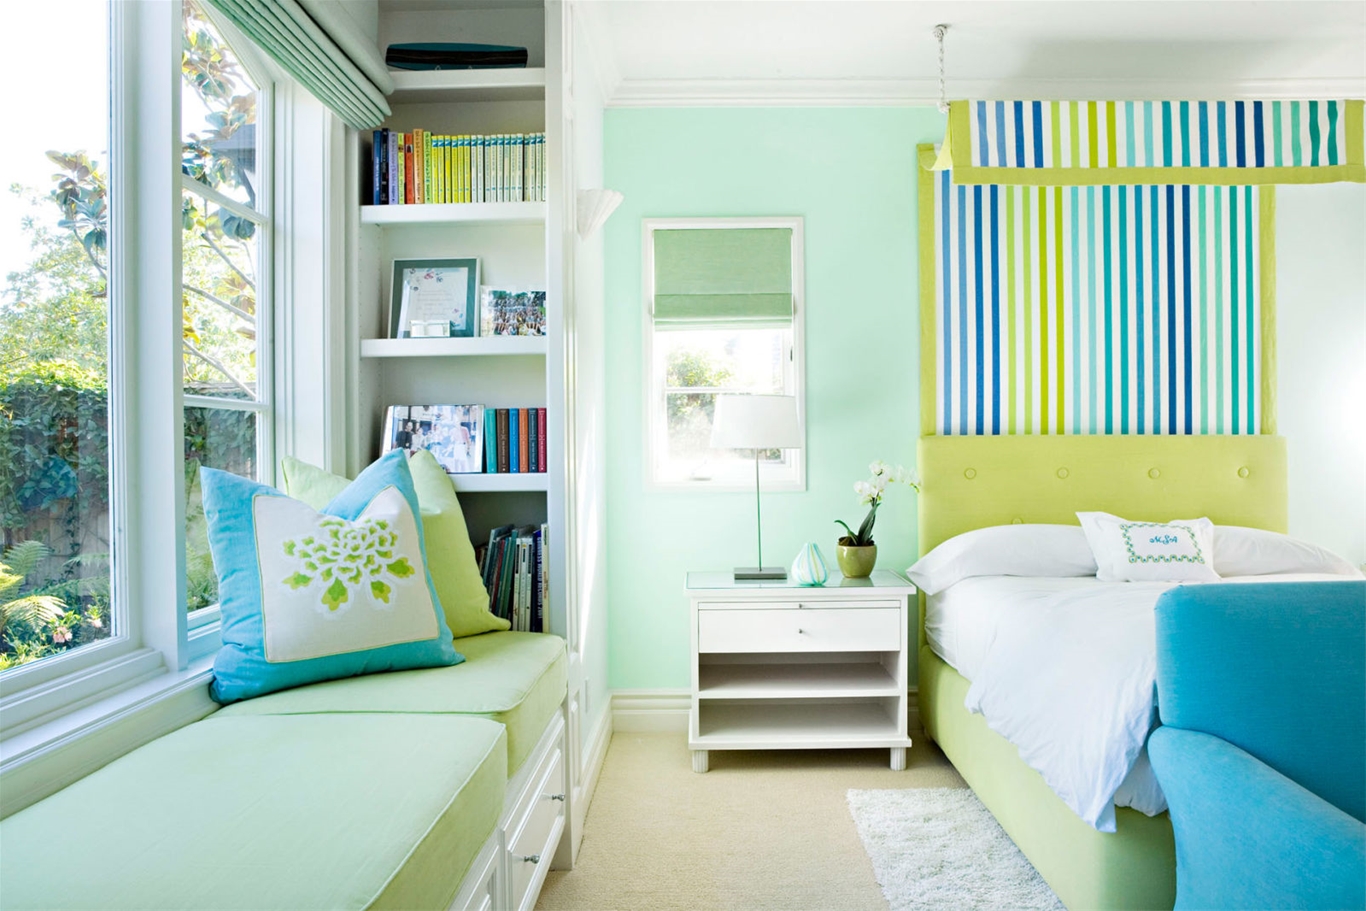 Phòng ngủ màu xanh ngọc